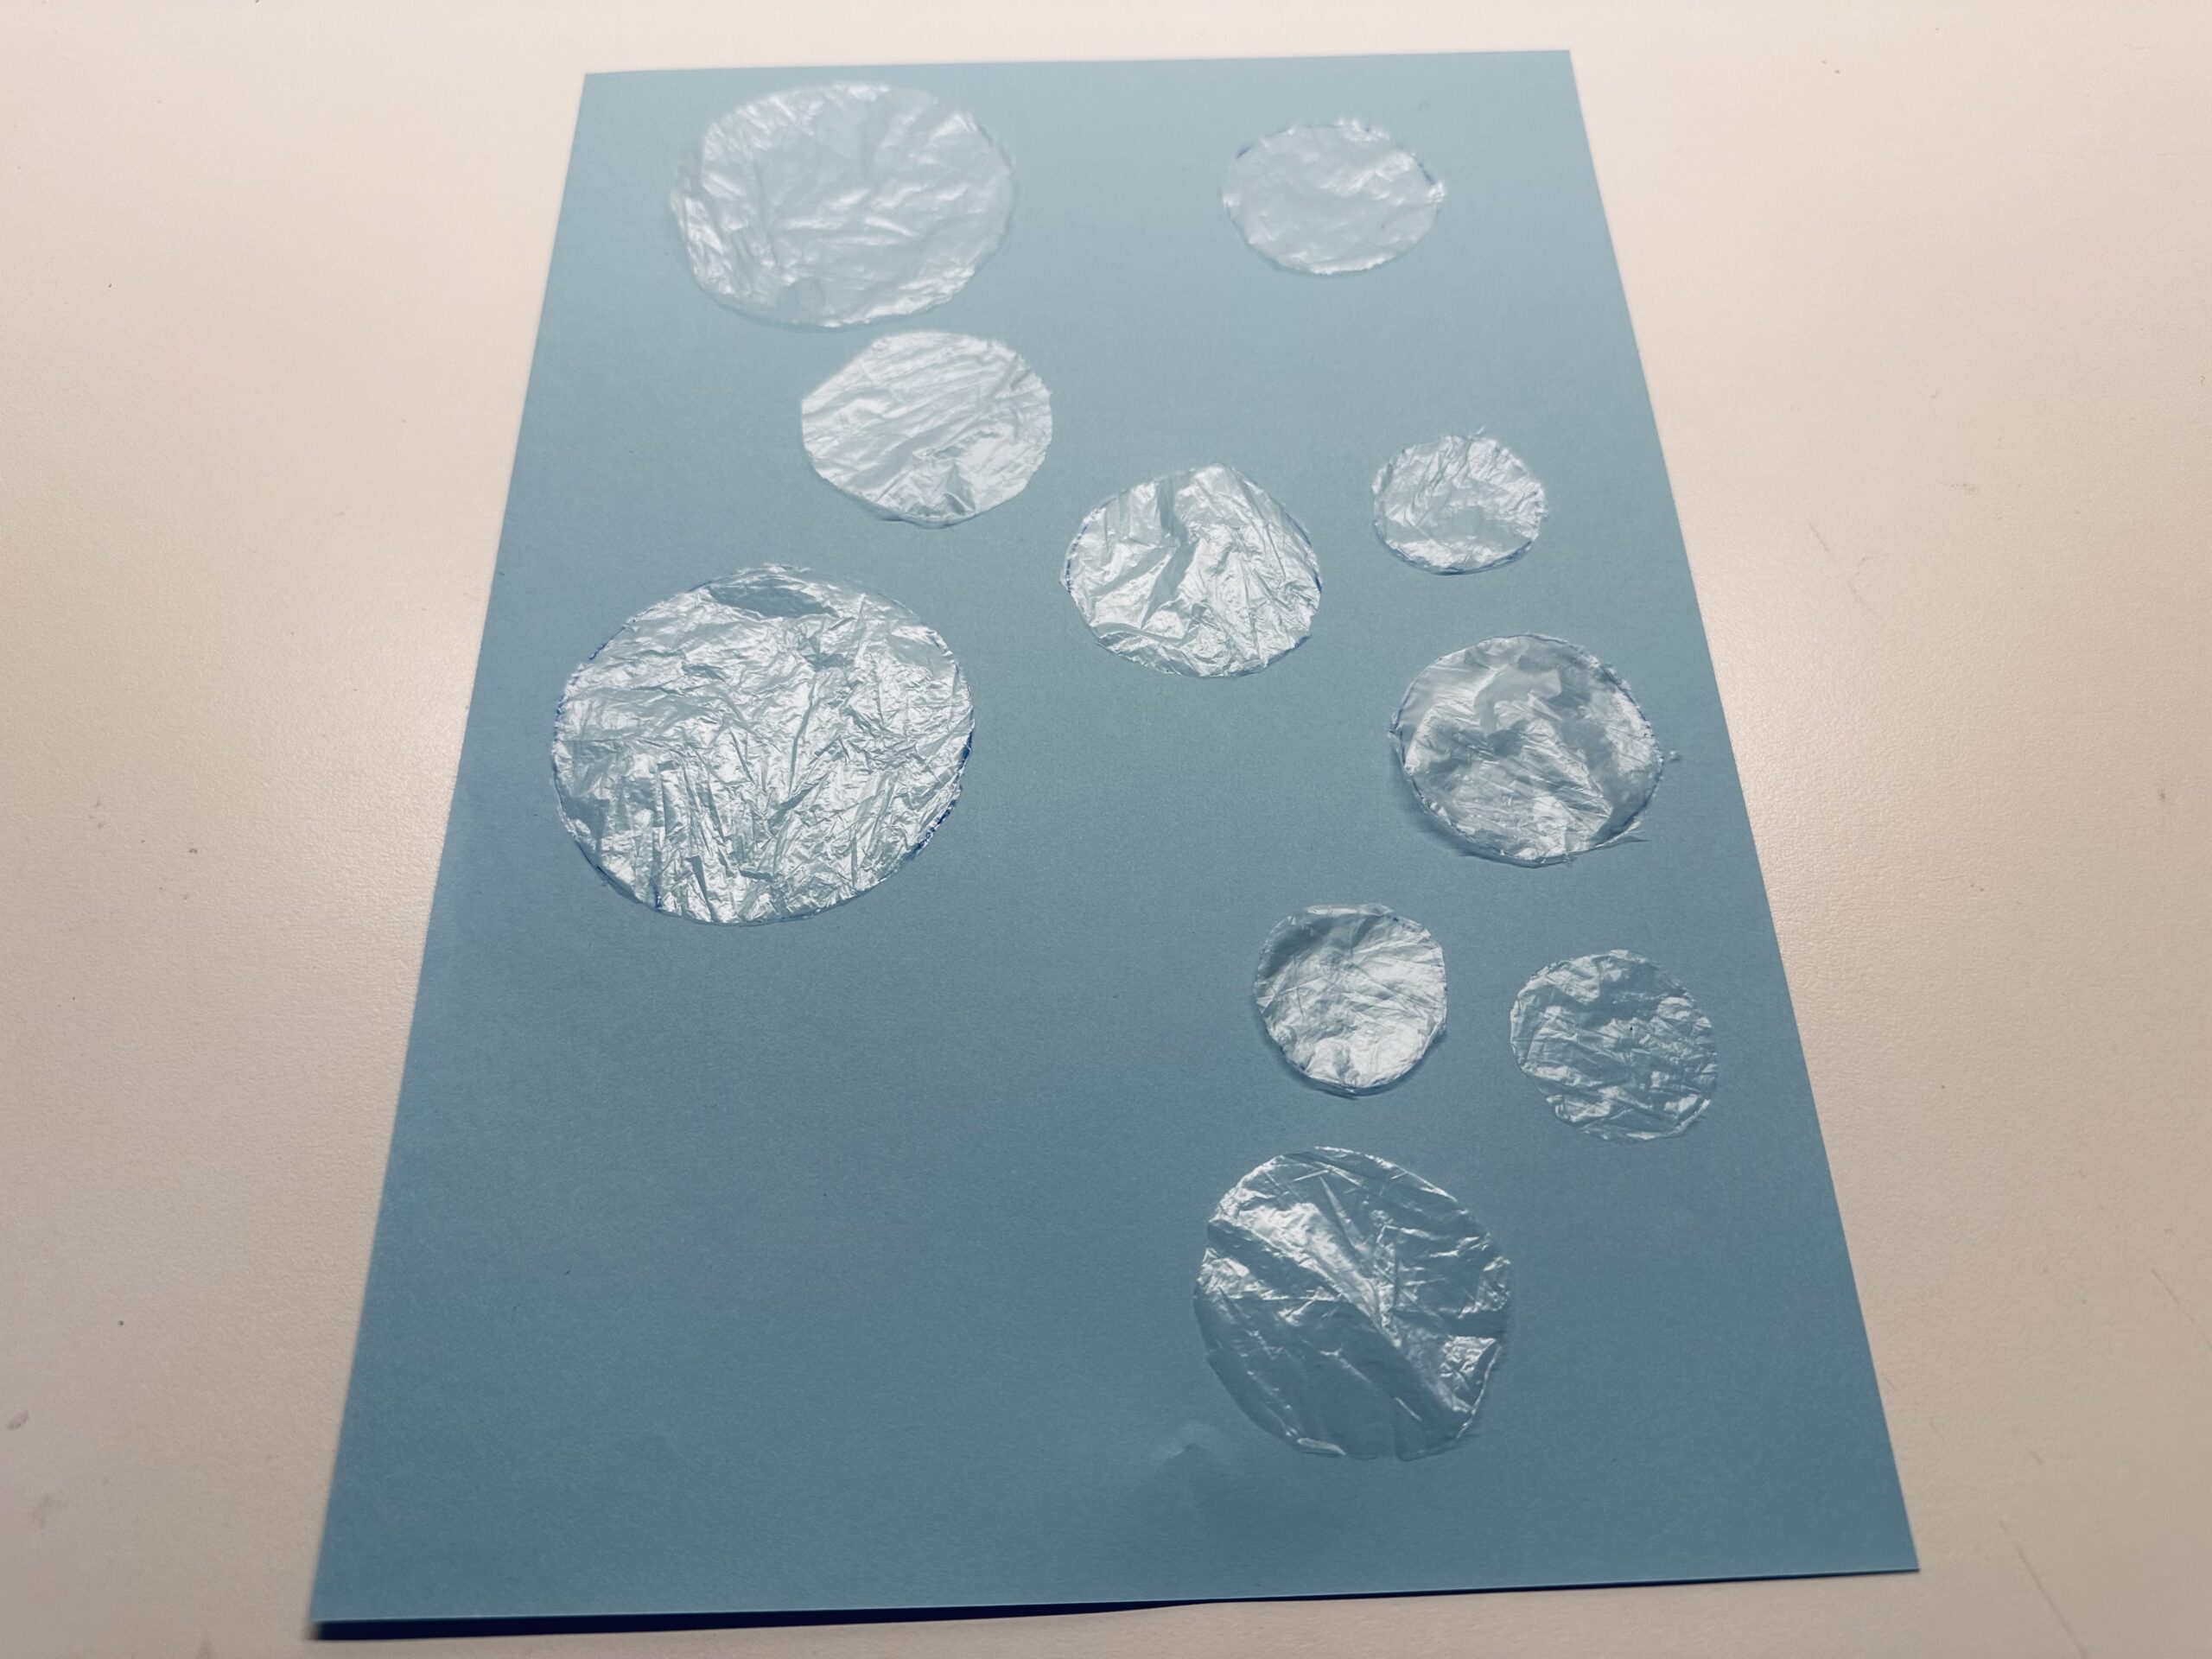 Bild zum Schritt 5 für das Bastel- und DIY-Abenteuer für Kinder: 'Die Luftblasen könnt ihr auf das blaue Papier legen, aber...'